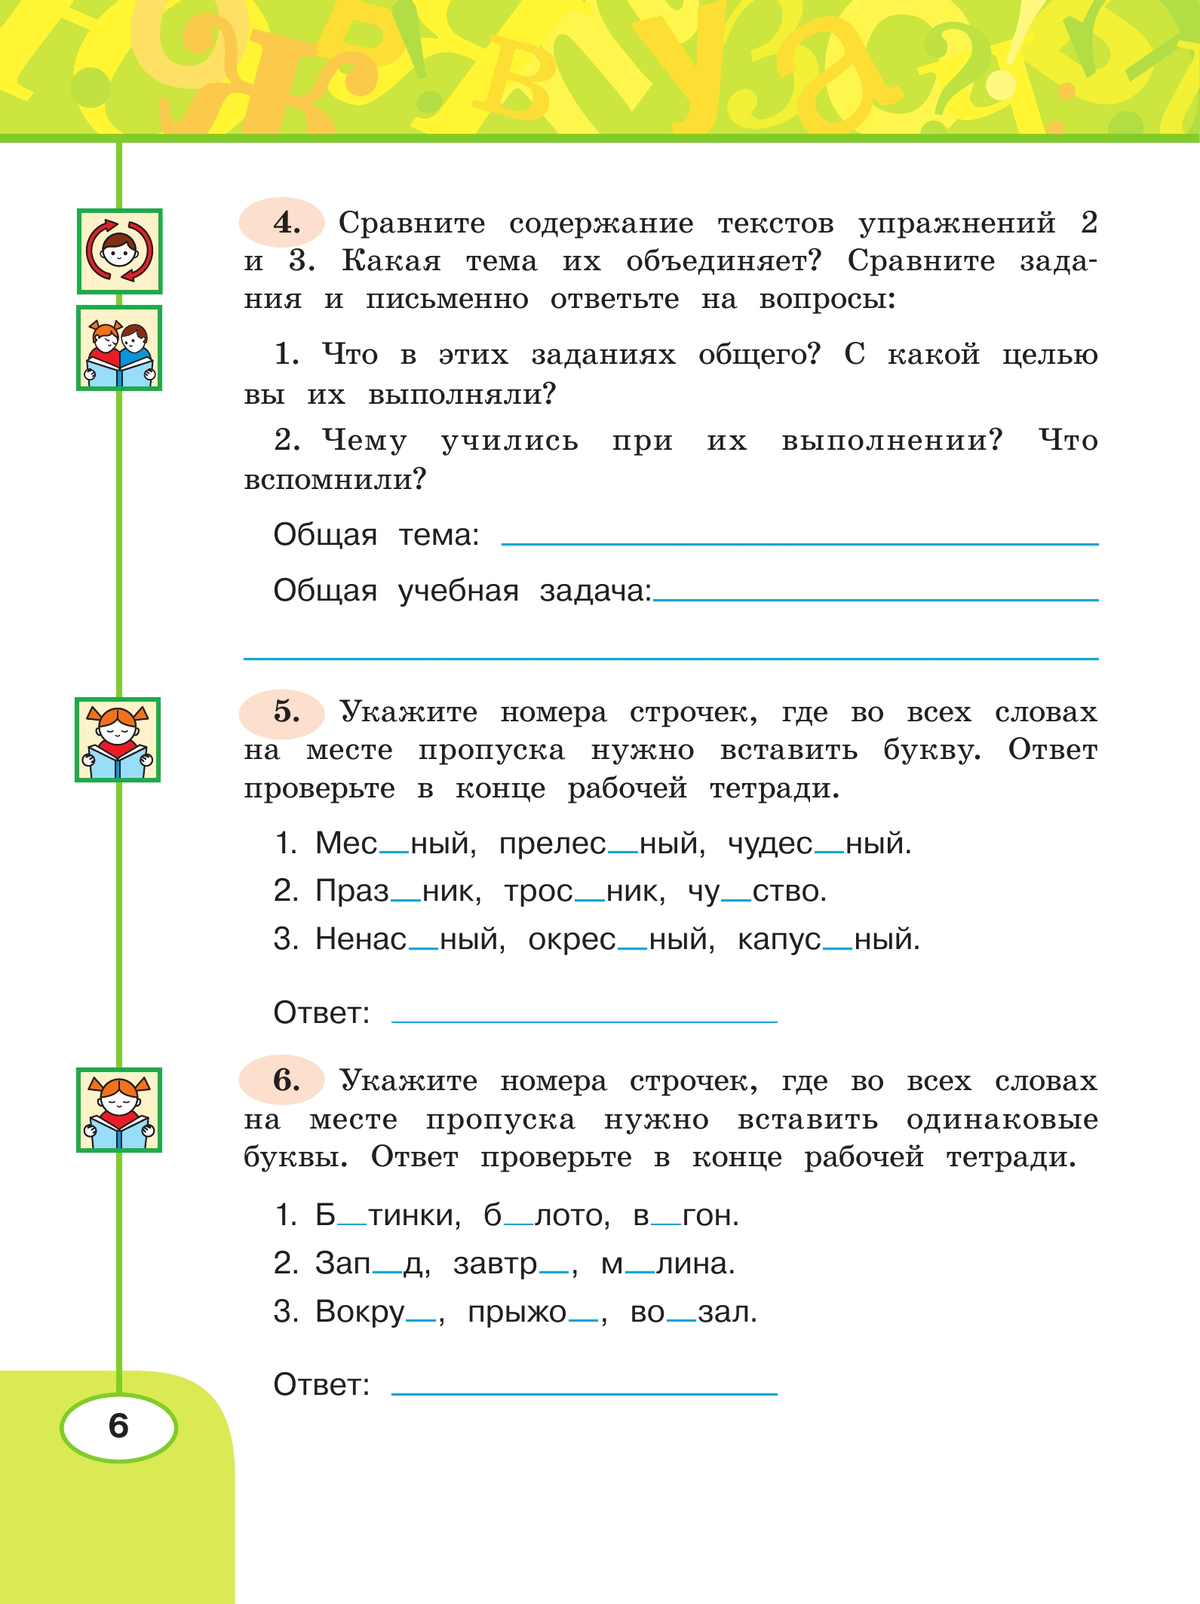 Русский язык. Рабочая тетрадь. 4 класс. В 2 частях. Часть 1. 8